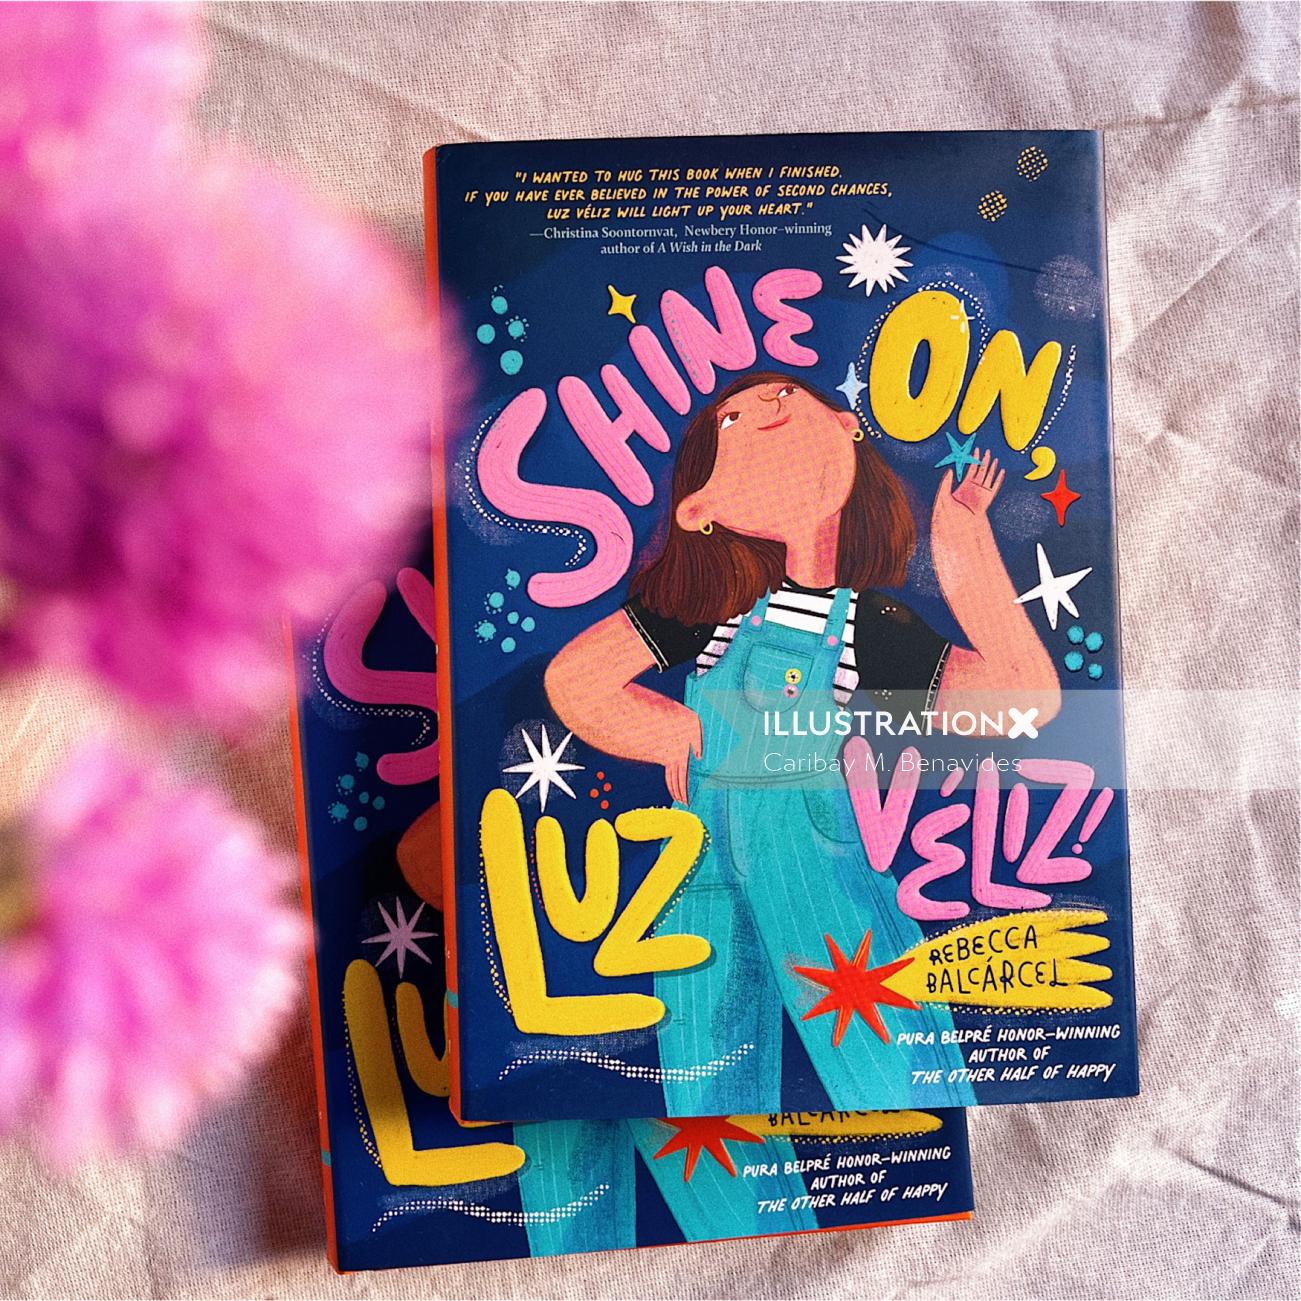 Rebecca Barcácel's "Shine On, Luz Velez" book cover design